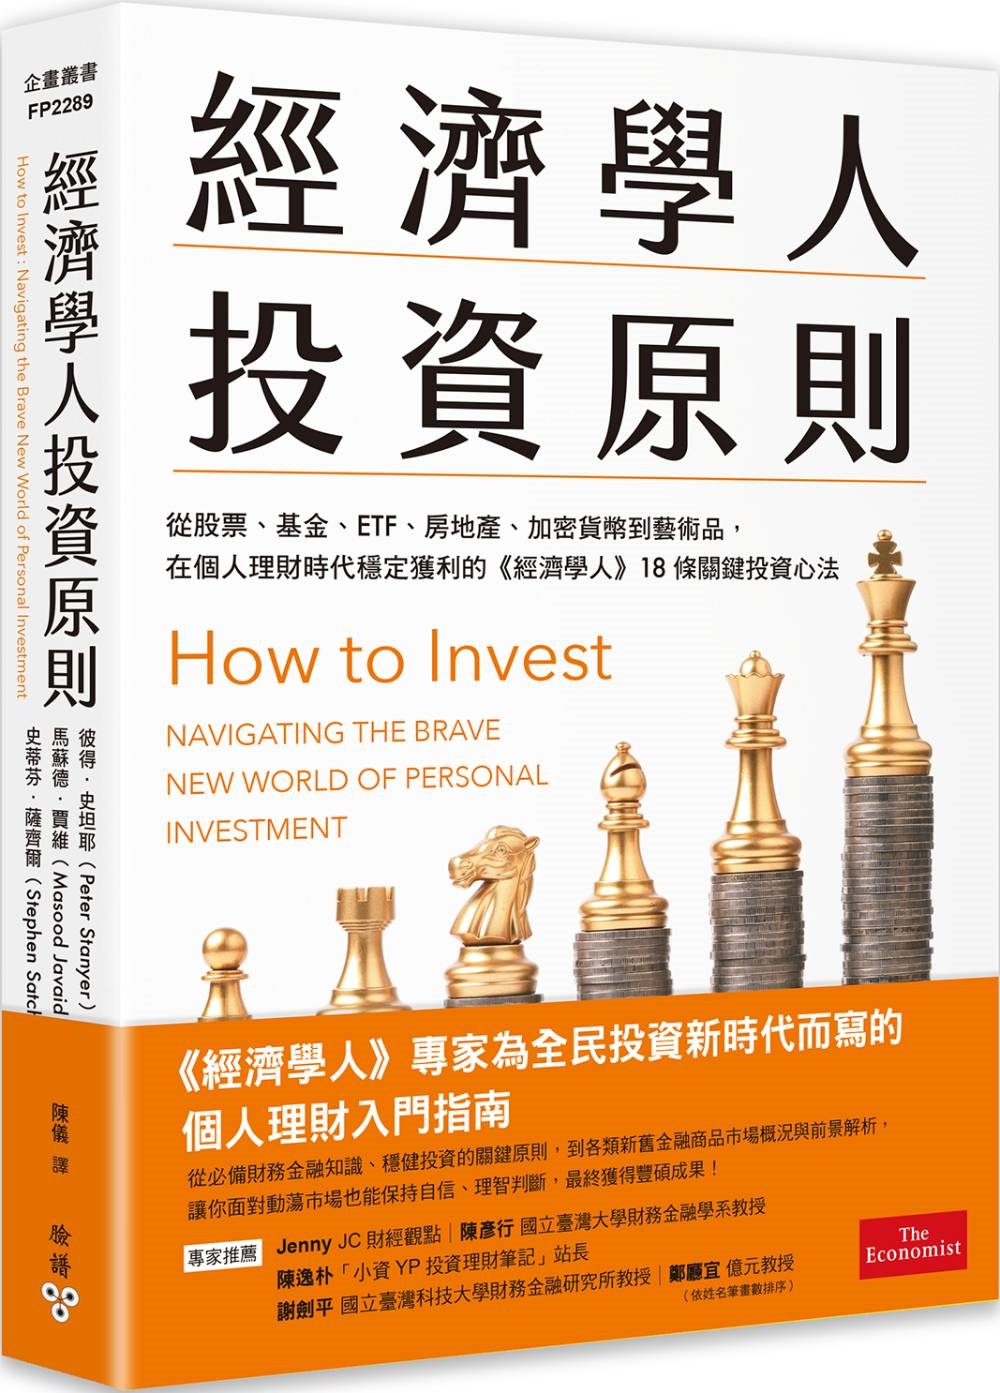 經濟學人投資原則: 從股票、基金、ETF、房地產、加密貨幣到藝術品, 在個人理財時代穩定獲利的經濟學人18條關鍵投資心法